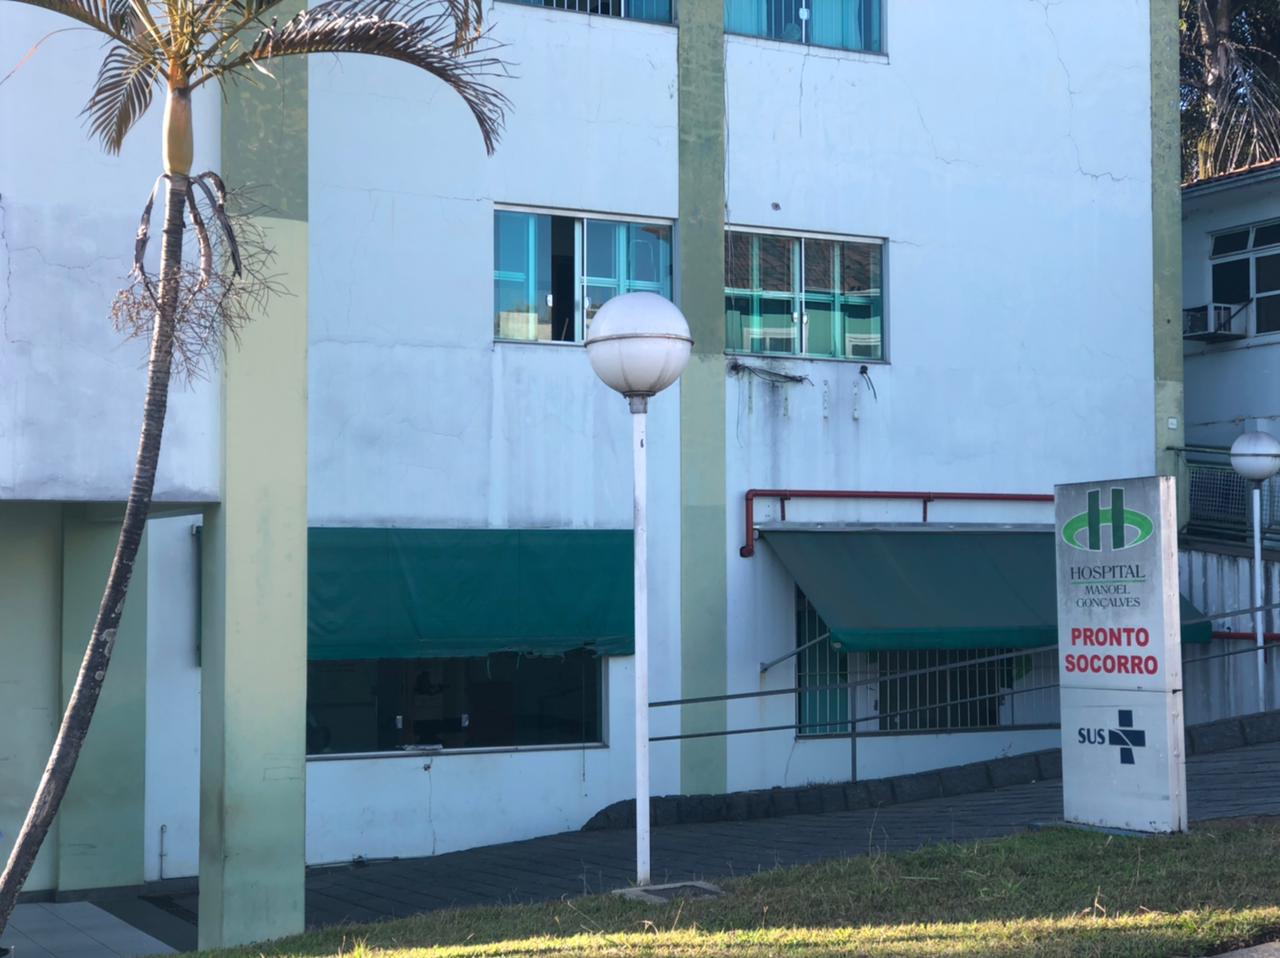 Vigilância ostensiva: após caso de agressão a médicos, hospital de Itaúna reforçará circuito interno de câmeras